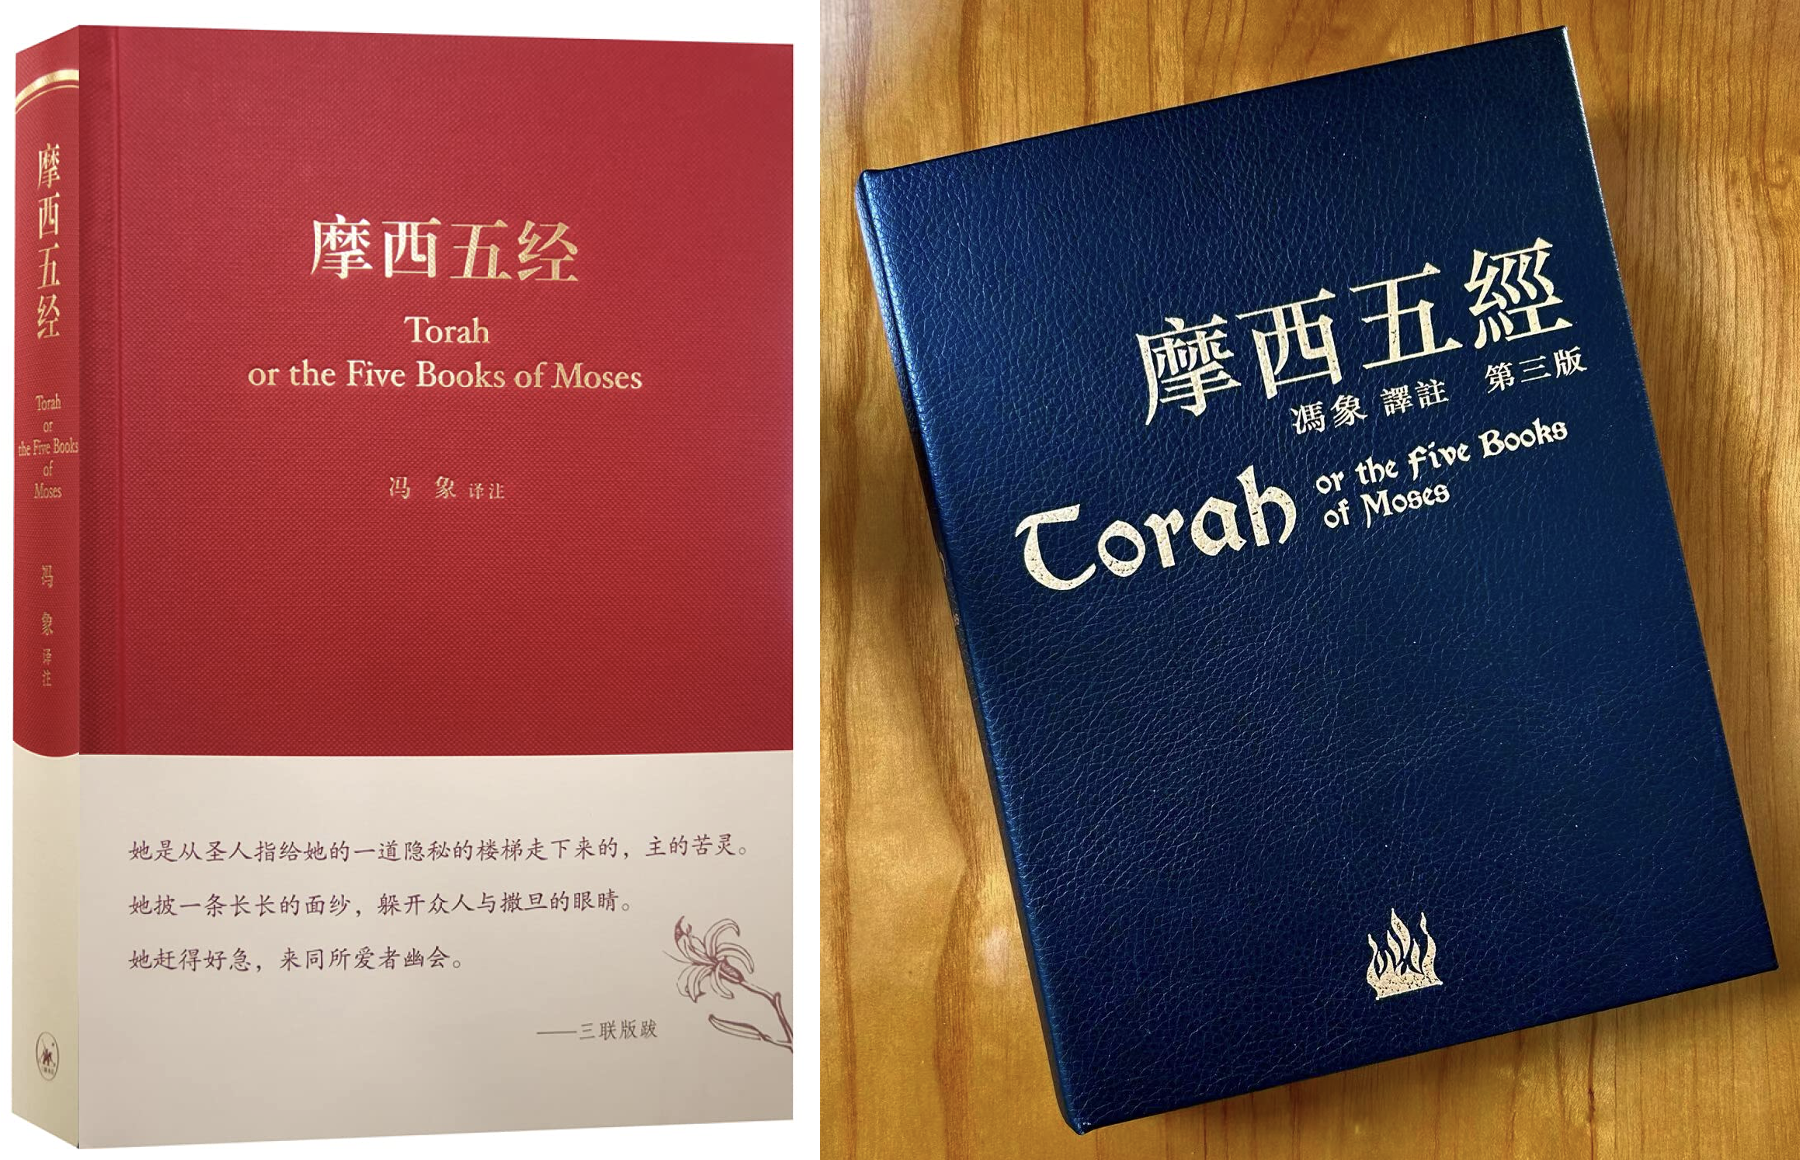 冯象译注《摩西五经》的第二版和第三版